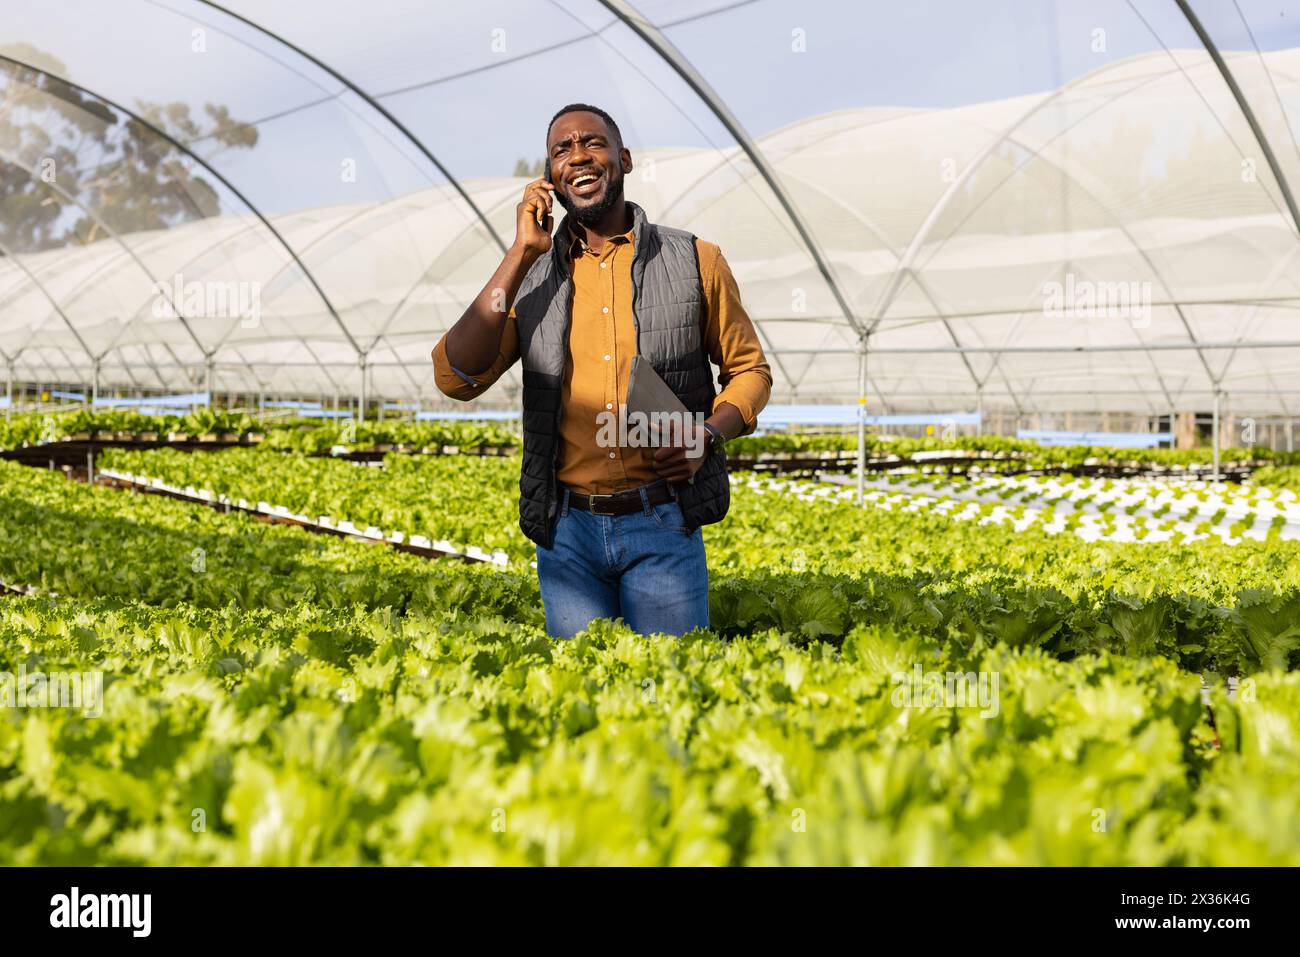 Jeune agriculteur afro-américain parlant au téléphone, marchant à travers la ferme hydroponique dans la serre. Portant des vêtements décontractés, il a les cheveux noirs courts an Banque D'Images